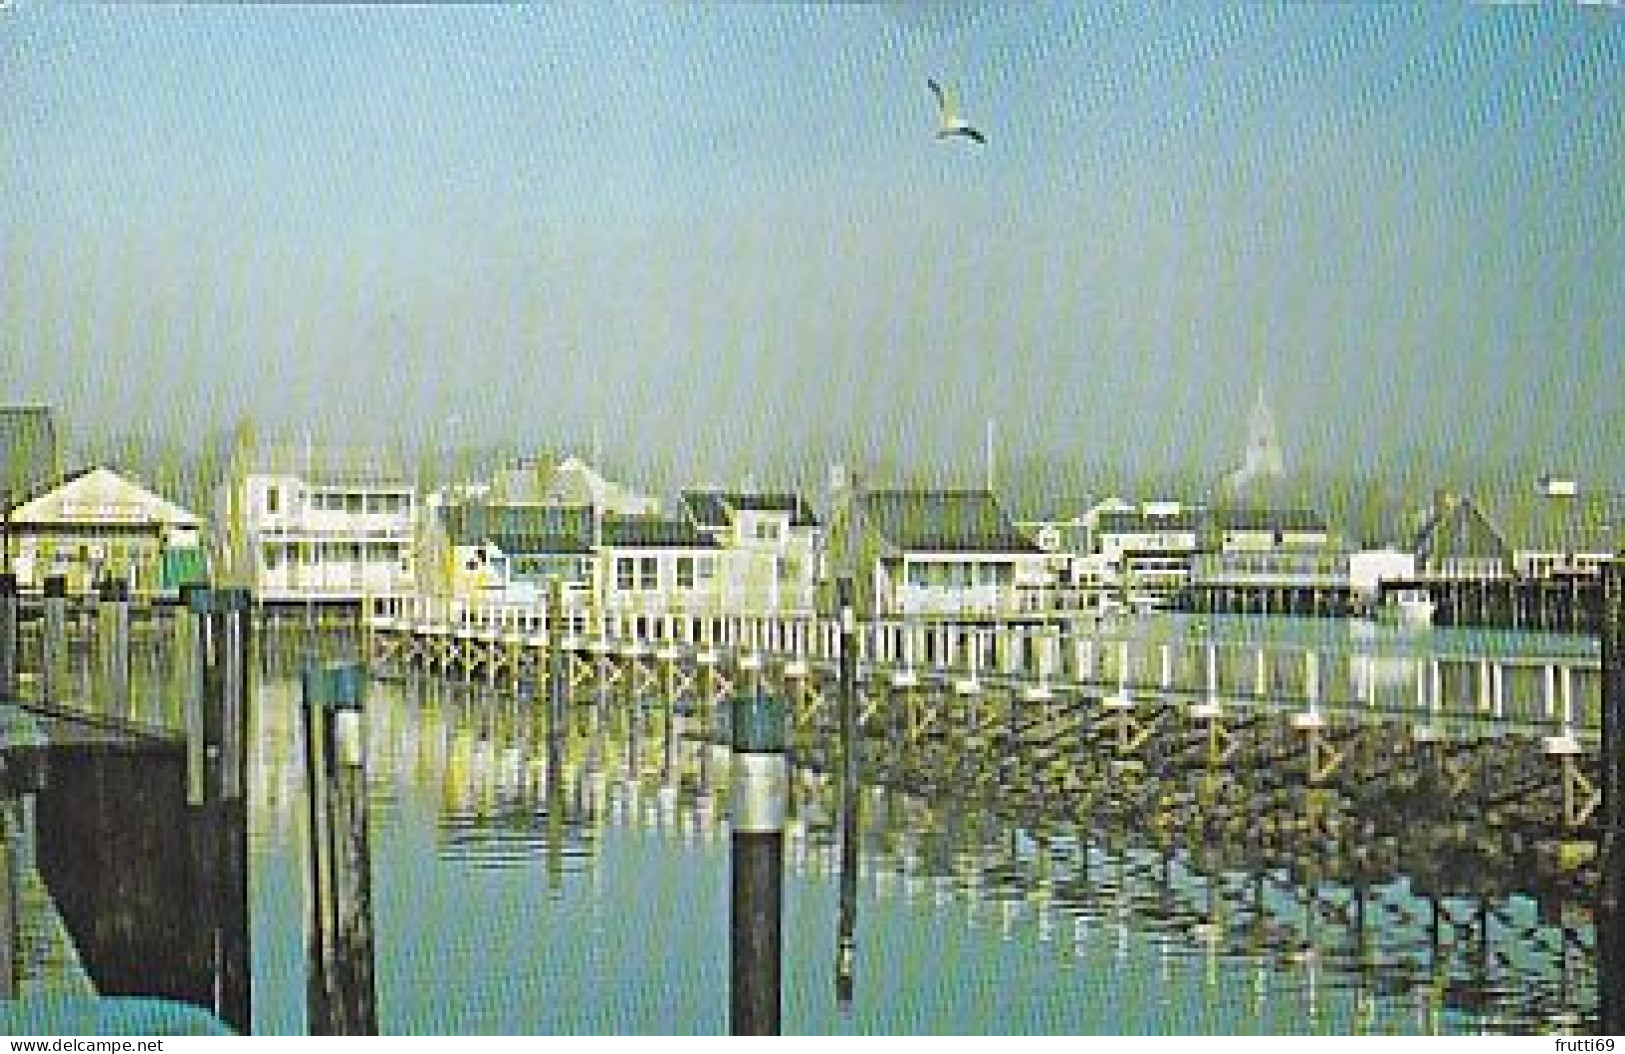 AK 174385 USA - Massachusetts - Nantucket - The Far-Away Island - Nantucket